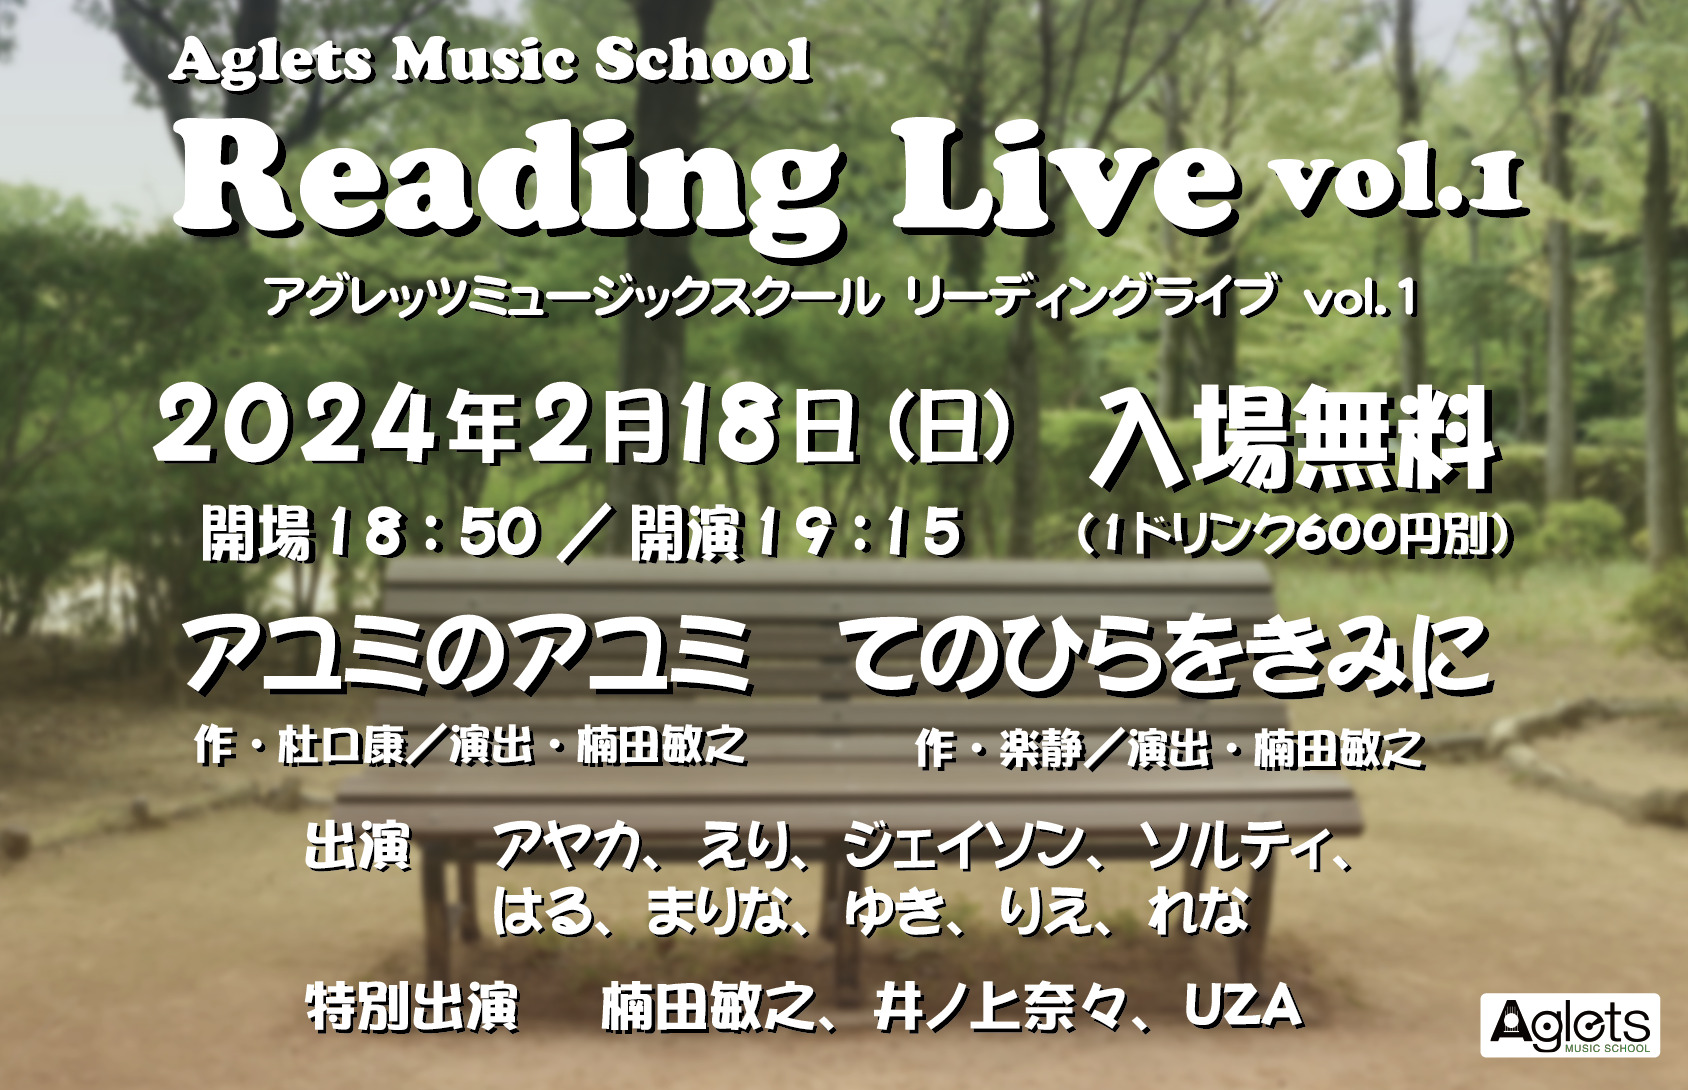 2/18(日) Aglets Music School Reading Live vol.1